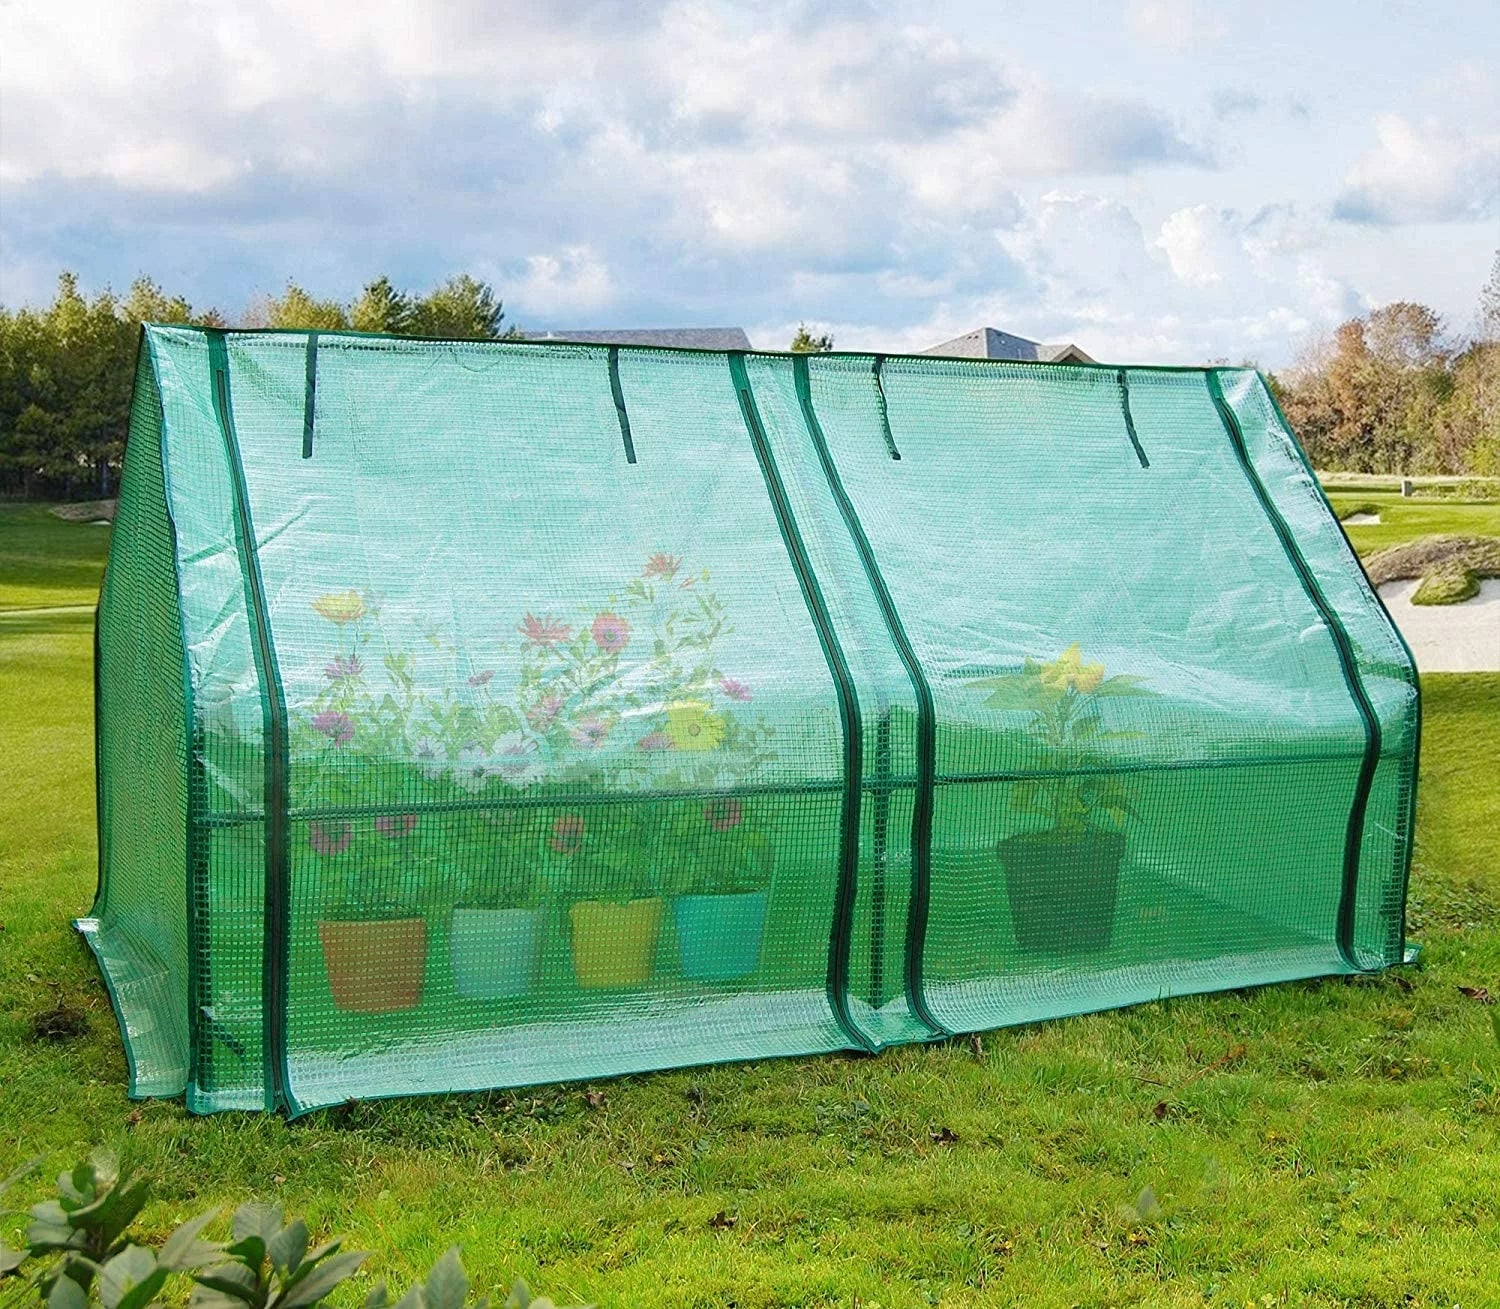 71 x 36 x 36 Mini Greenhouse on grass